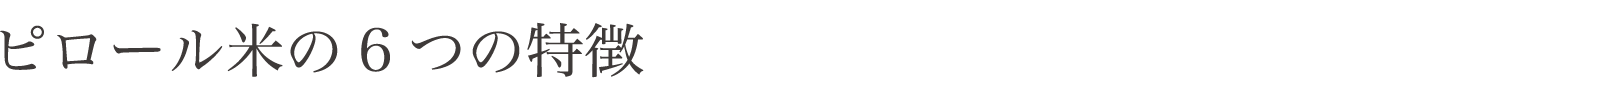 ピロール米の6つの特徴